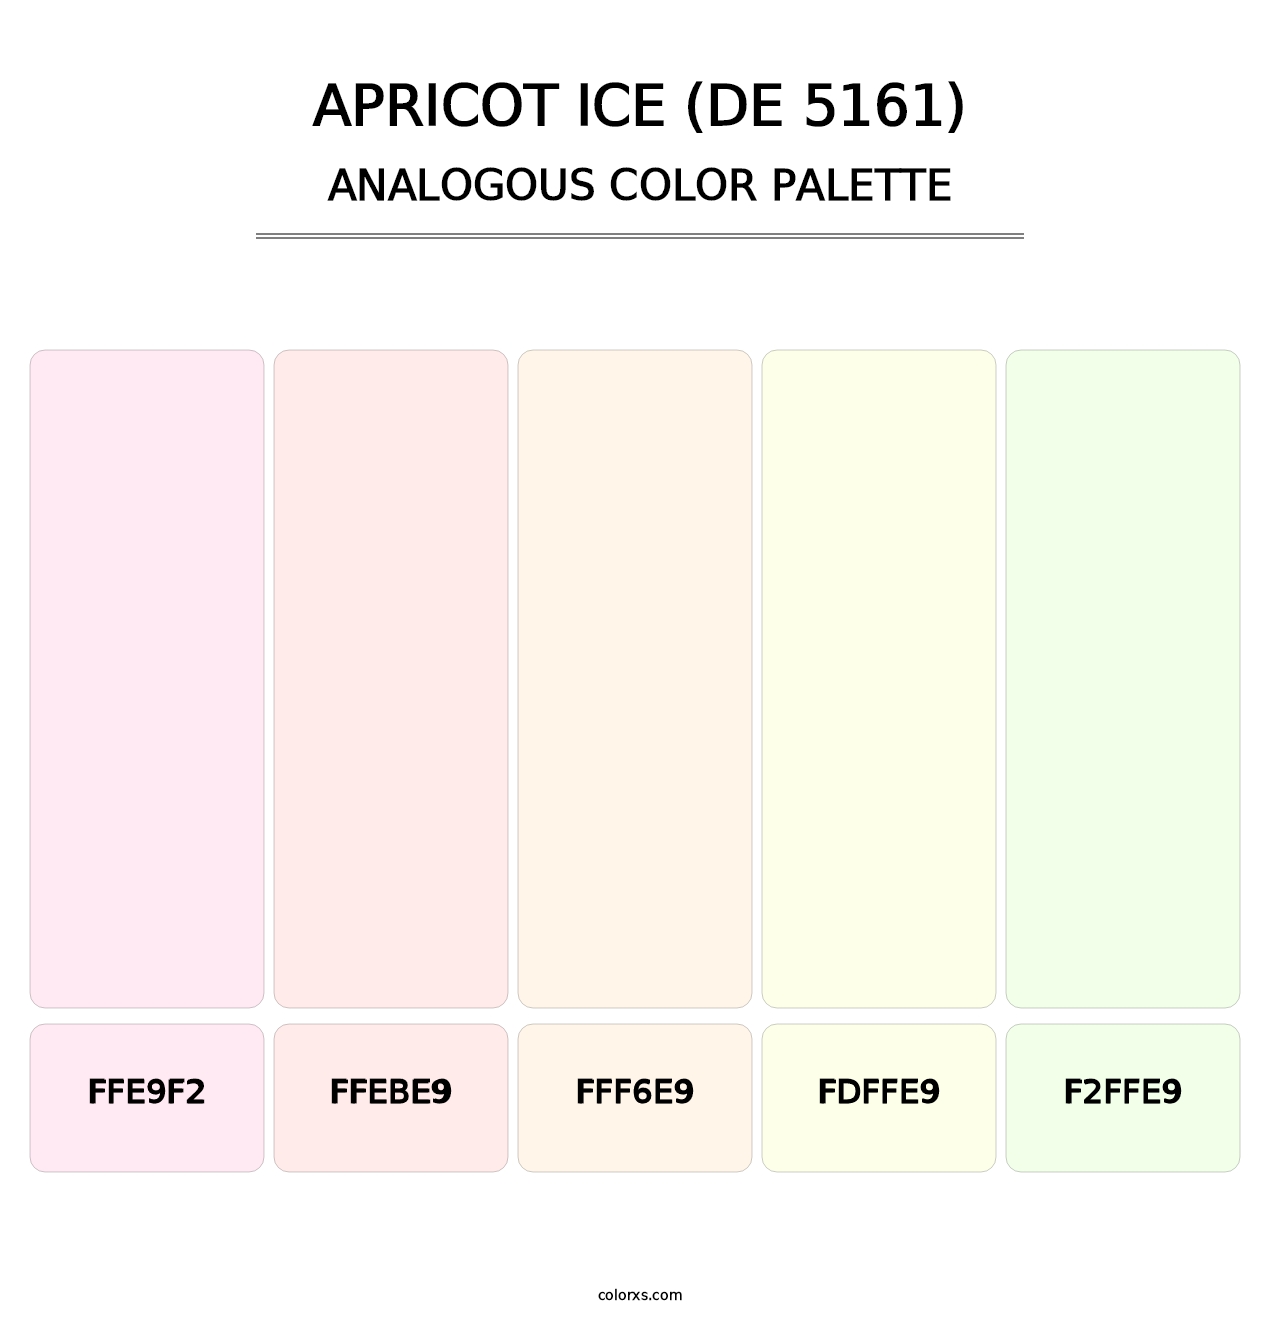 Apricot Ice (DE 5161) - Analogous Color Palette